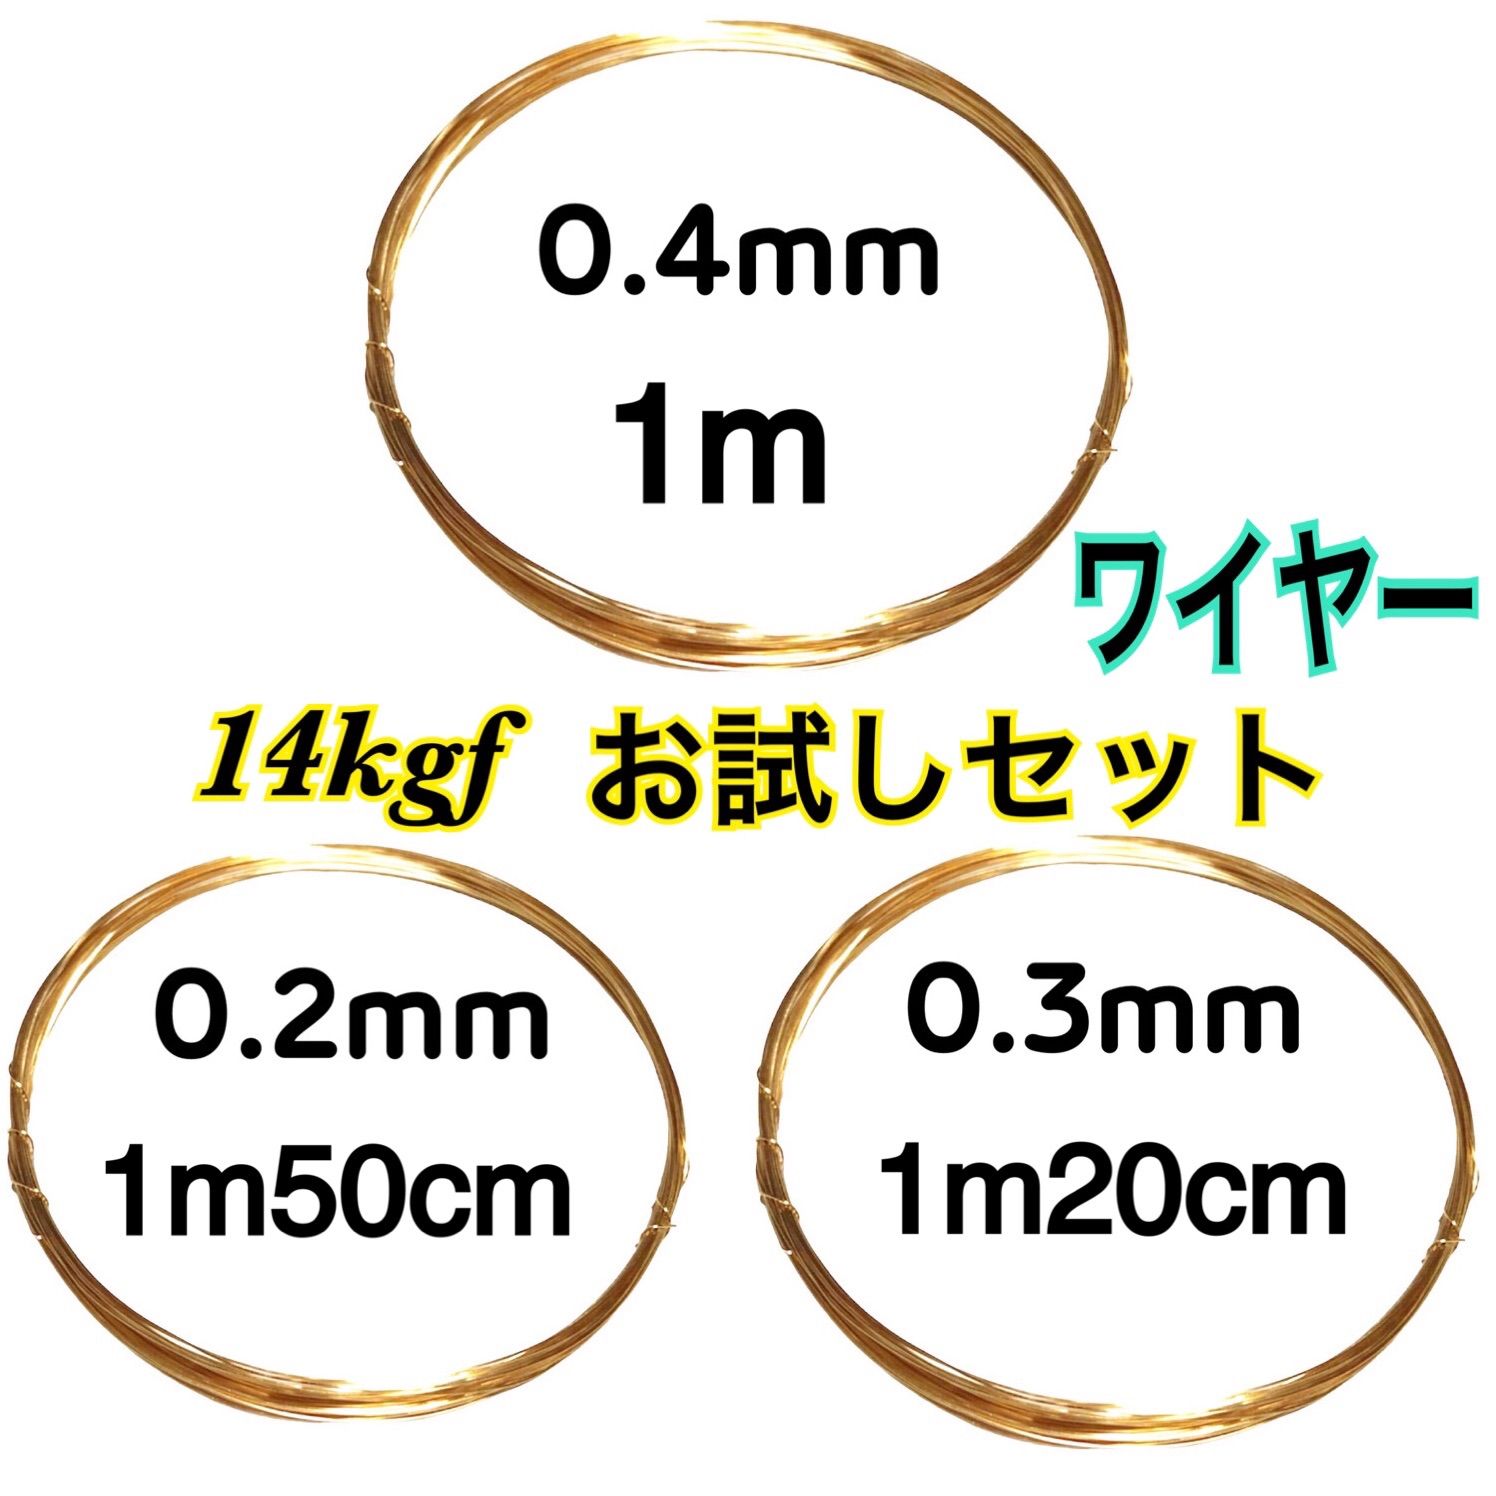 【お試し3種類セット】14kgfソフトワイヤー　ハンドメイドアクセサリー作りに 0.2mm→1m50cm 0.3mm→1m20cm 0.4mm→1m